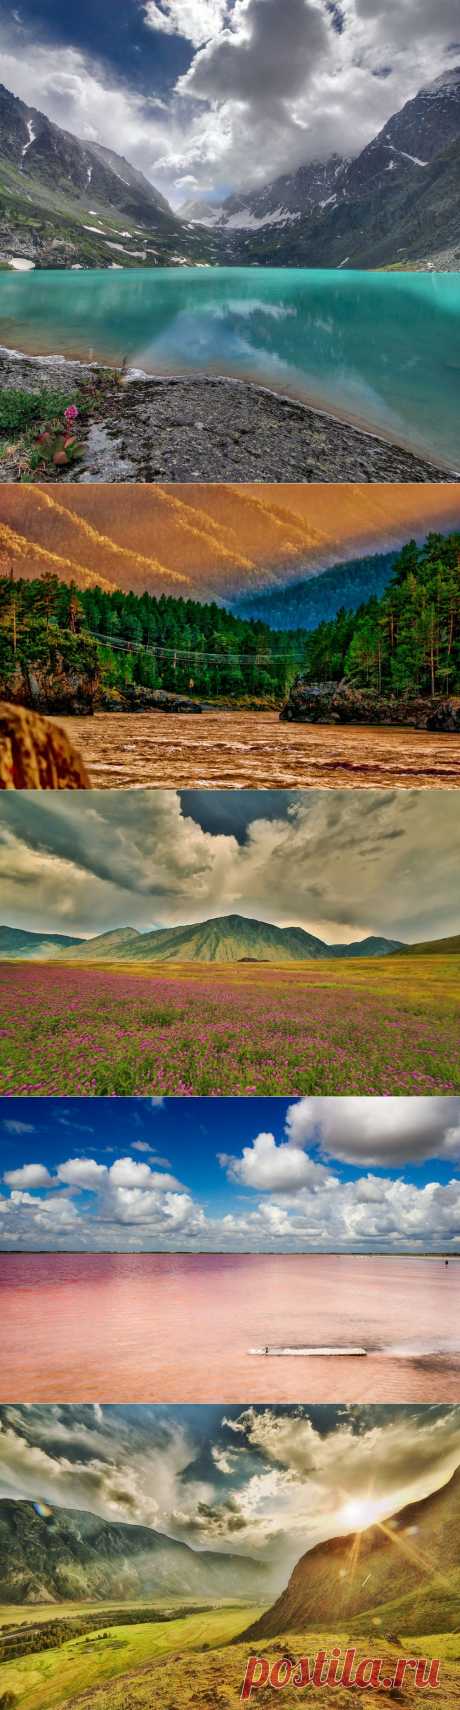 Завораживающая красота Алтайского края.